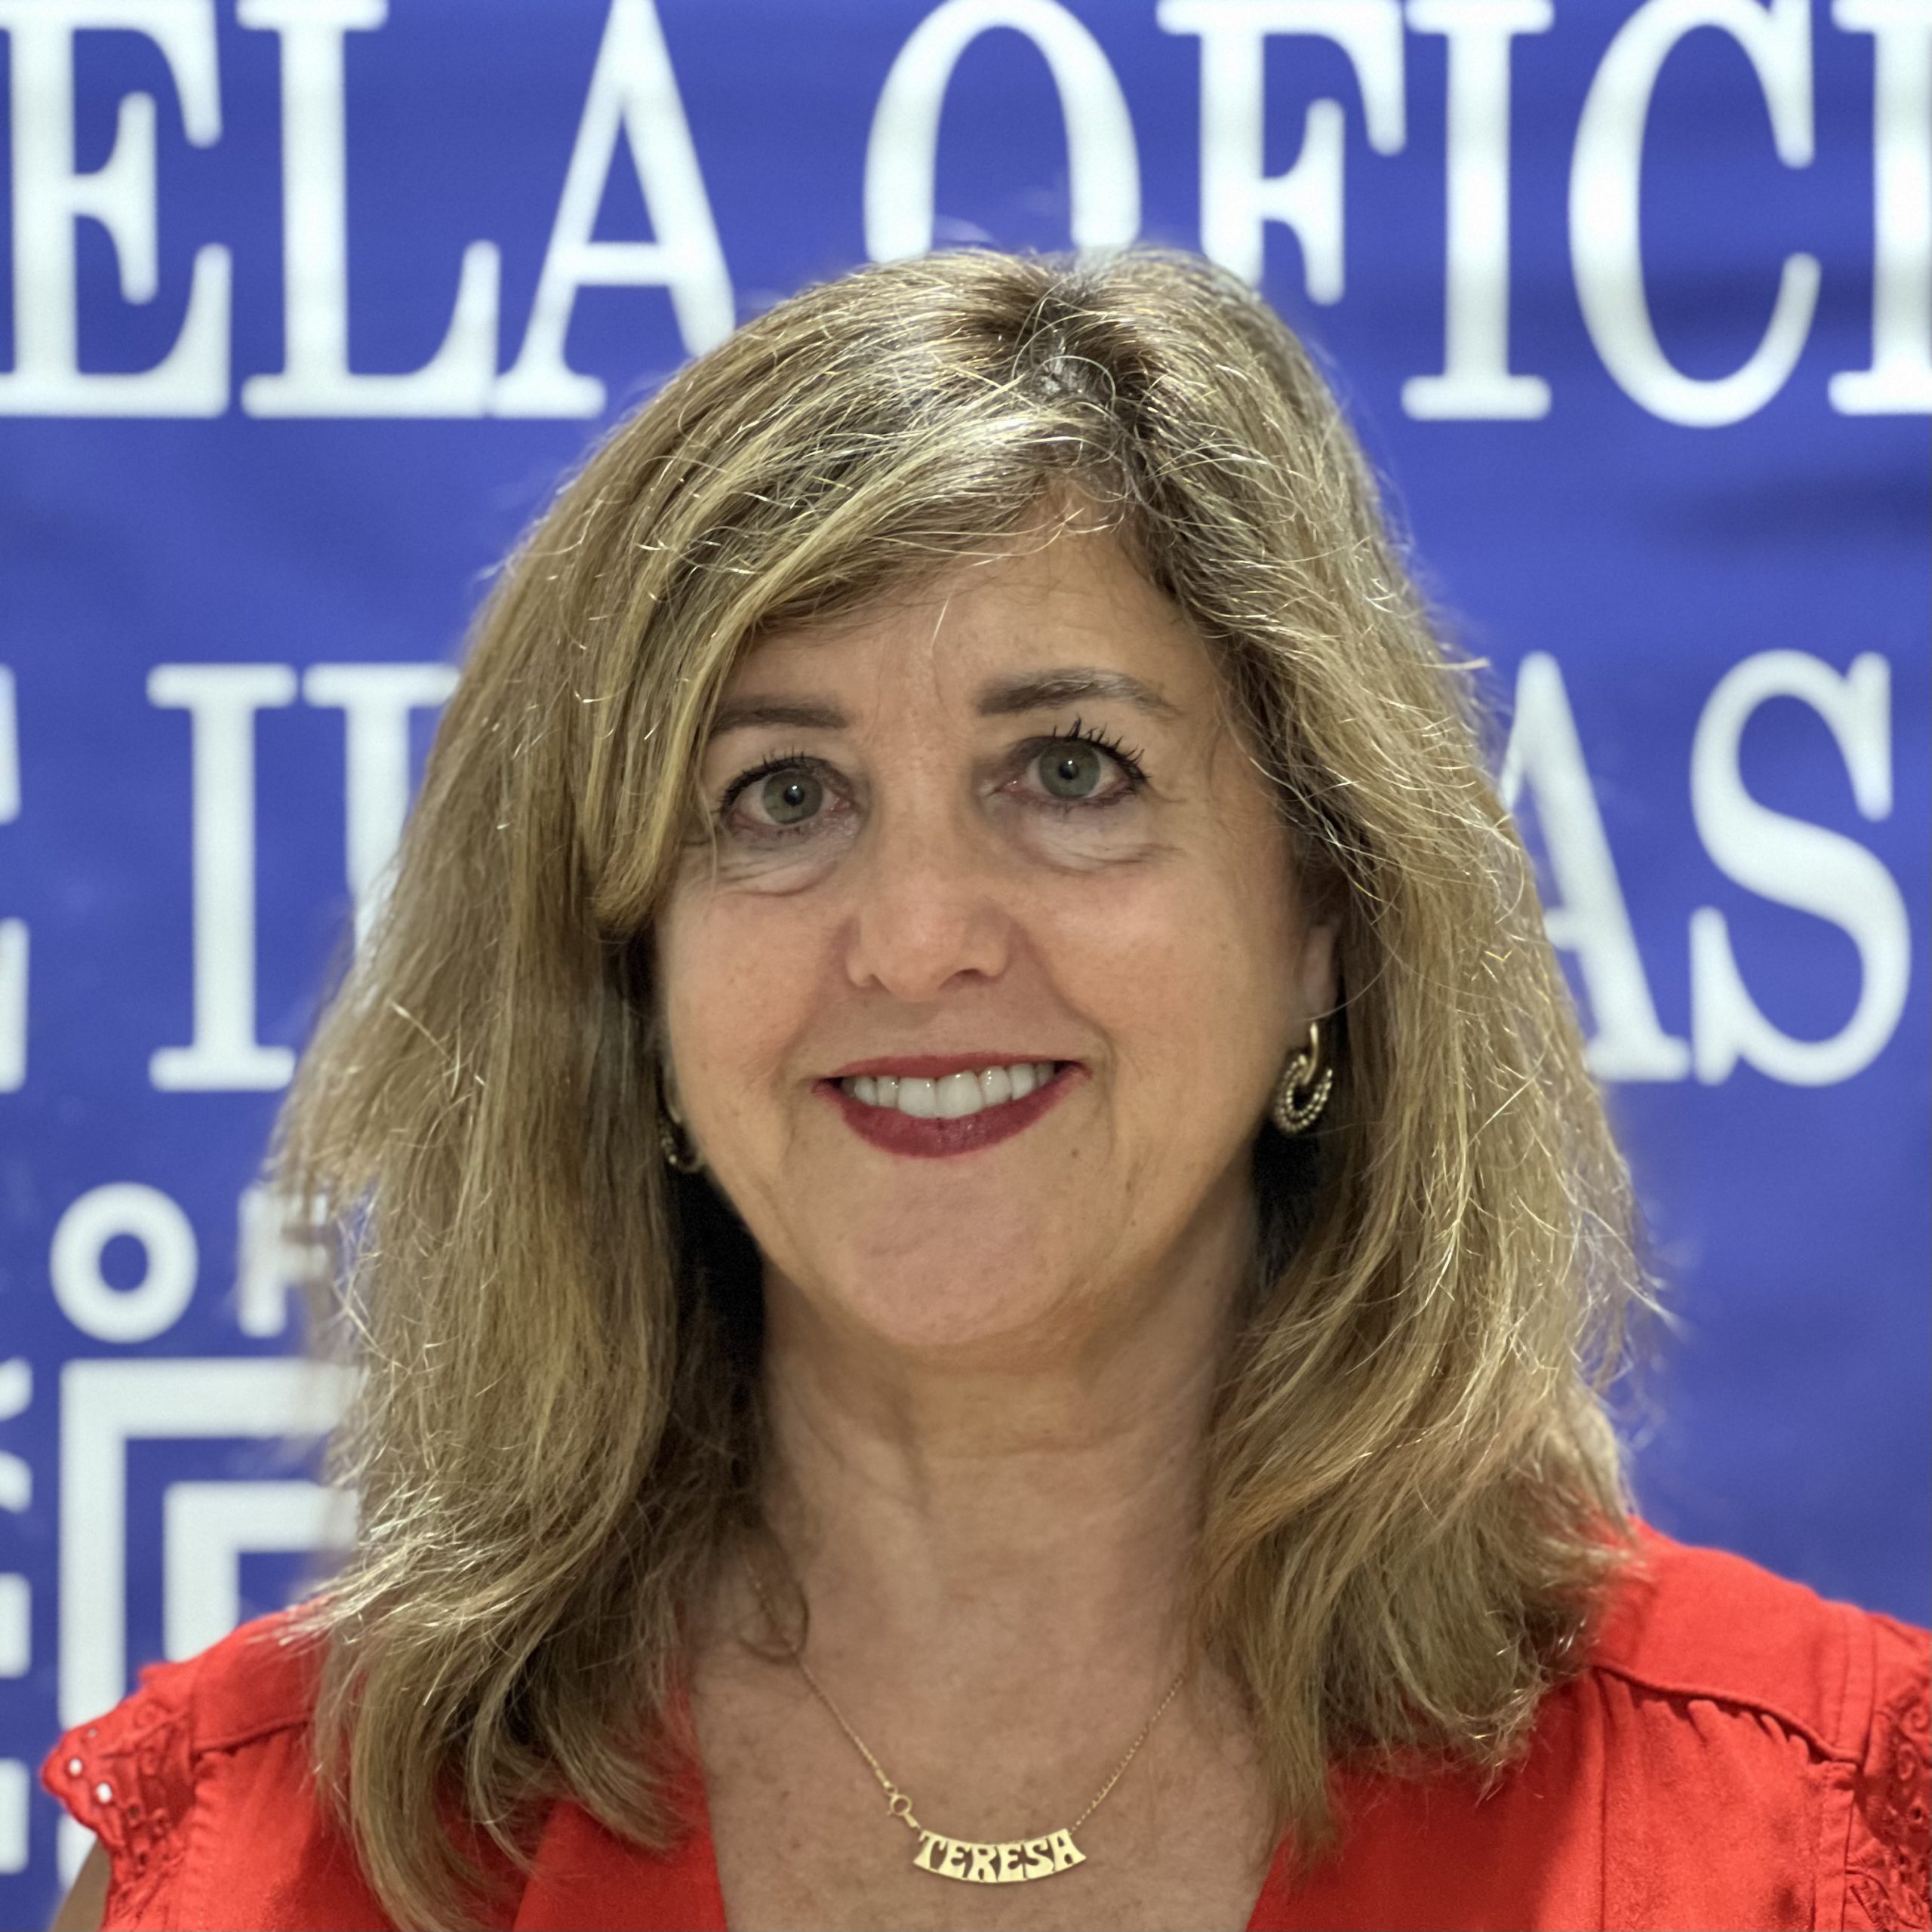 Teresa Franco